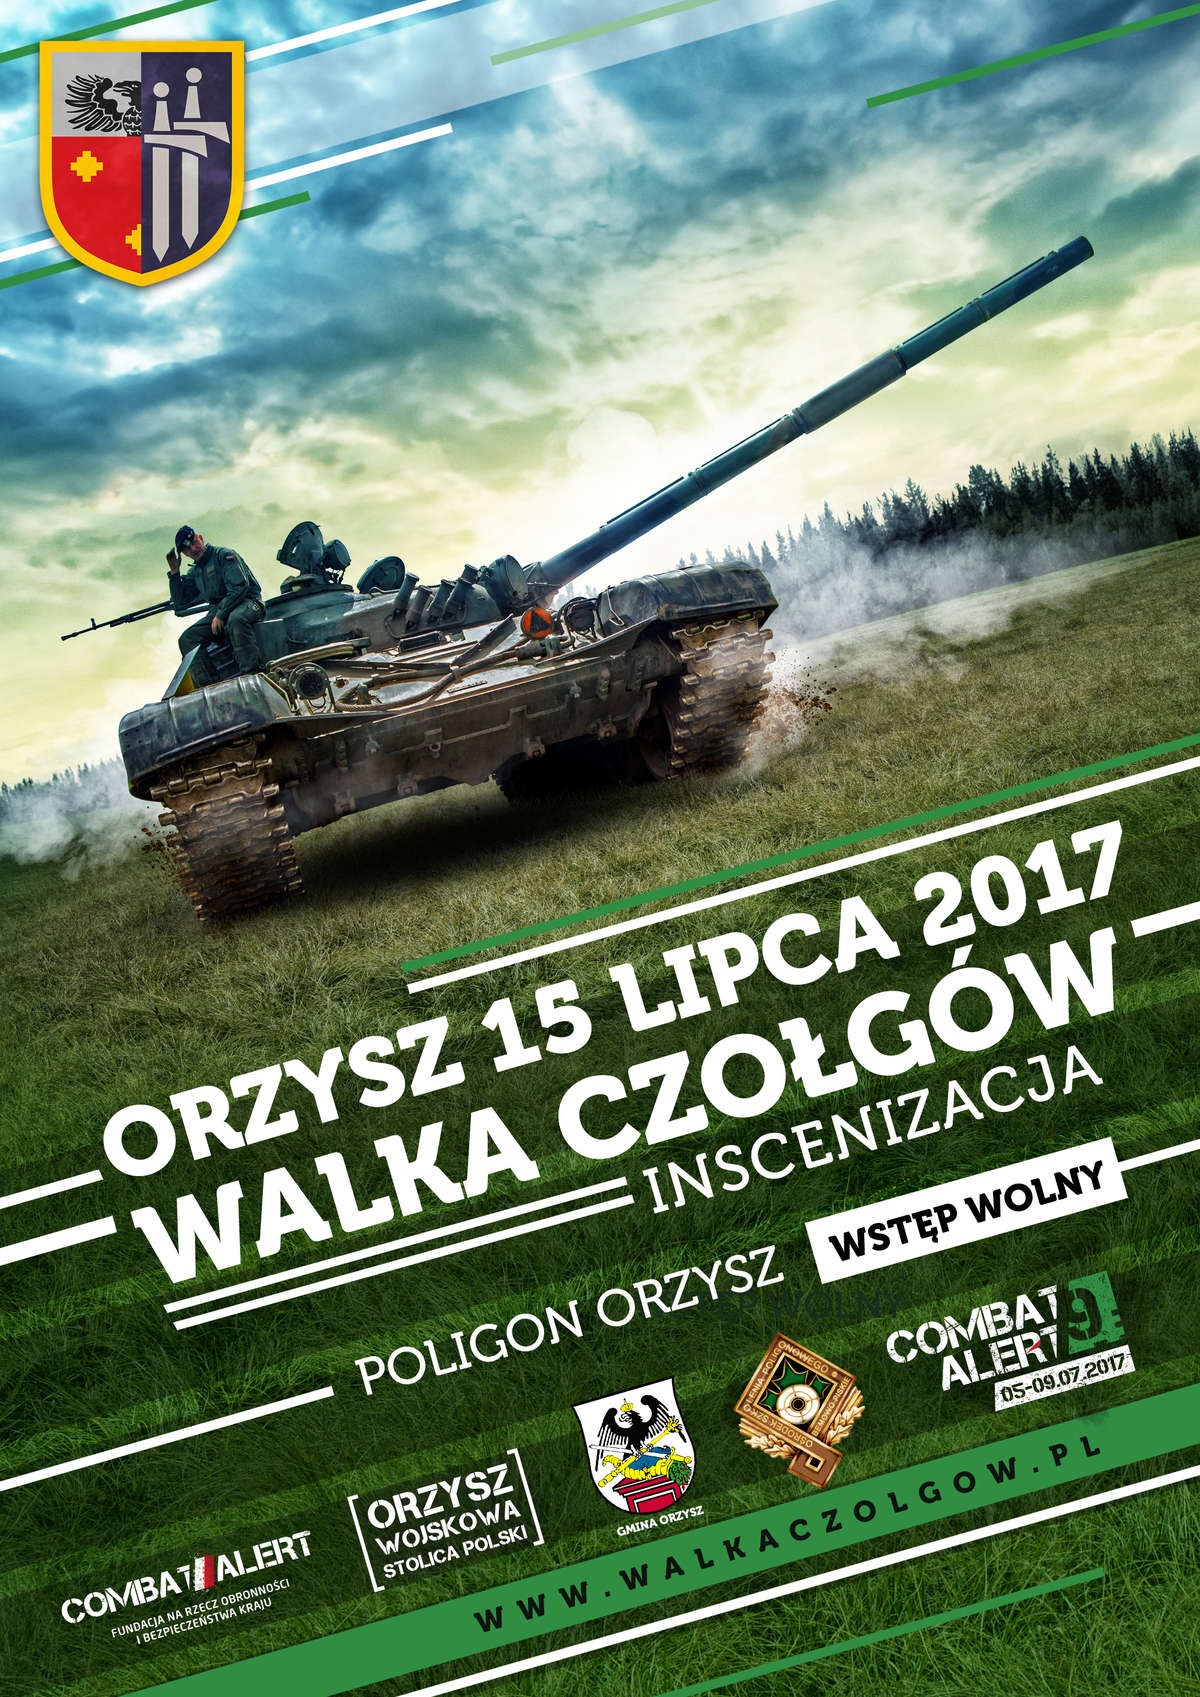 Walka Czołgów, czyli piknik militarny  w Orzyszu - full image